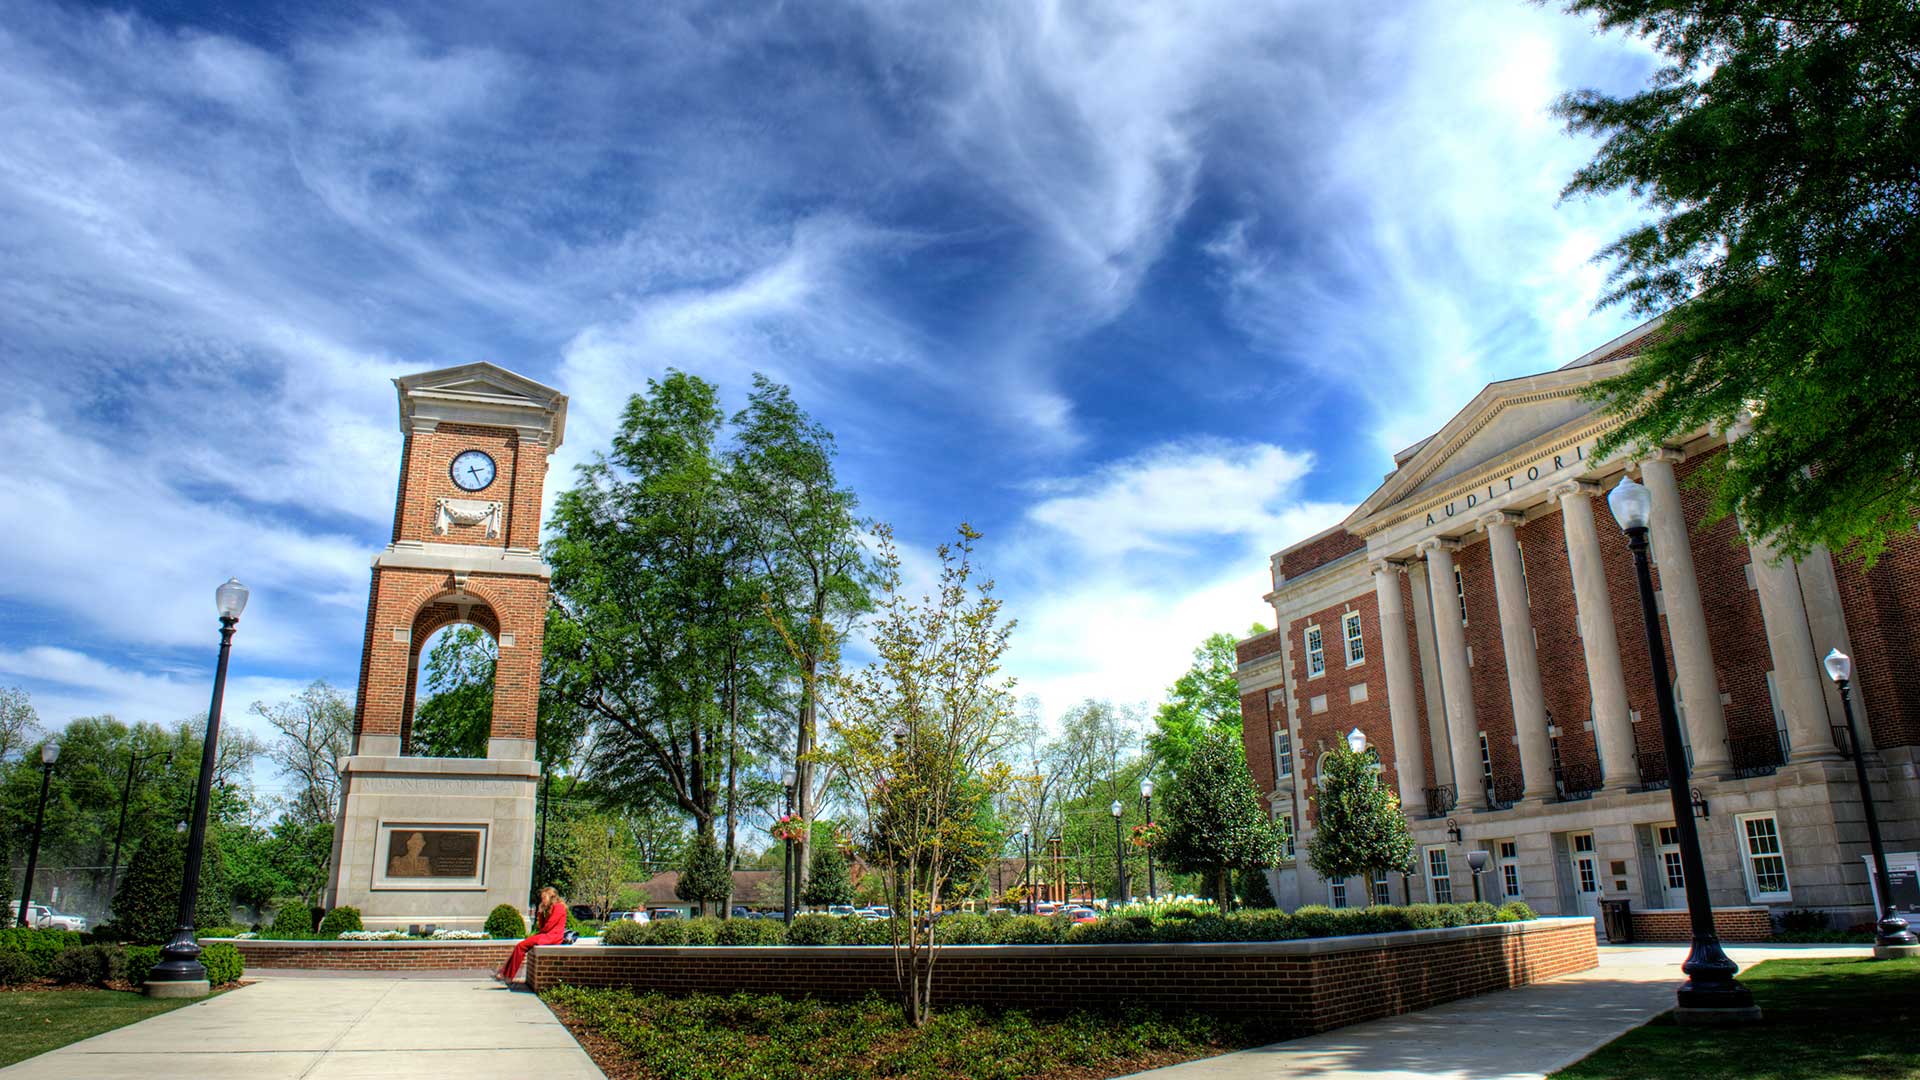 History of UA. The University of Alabama